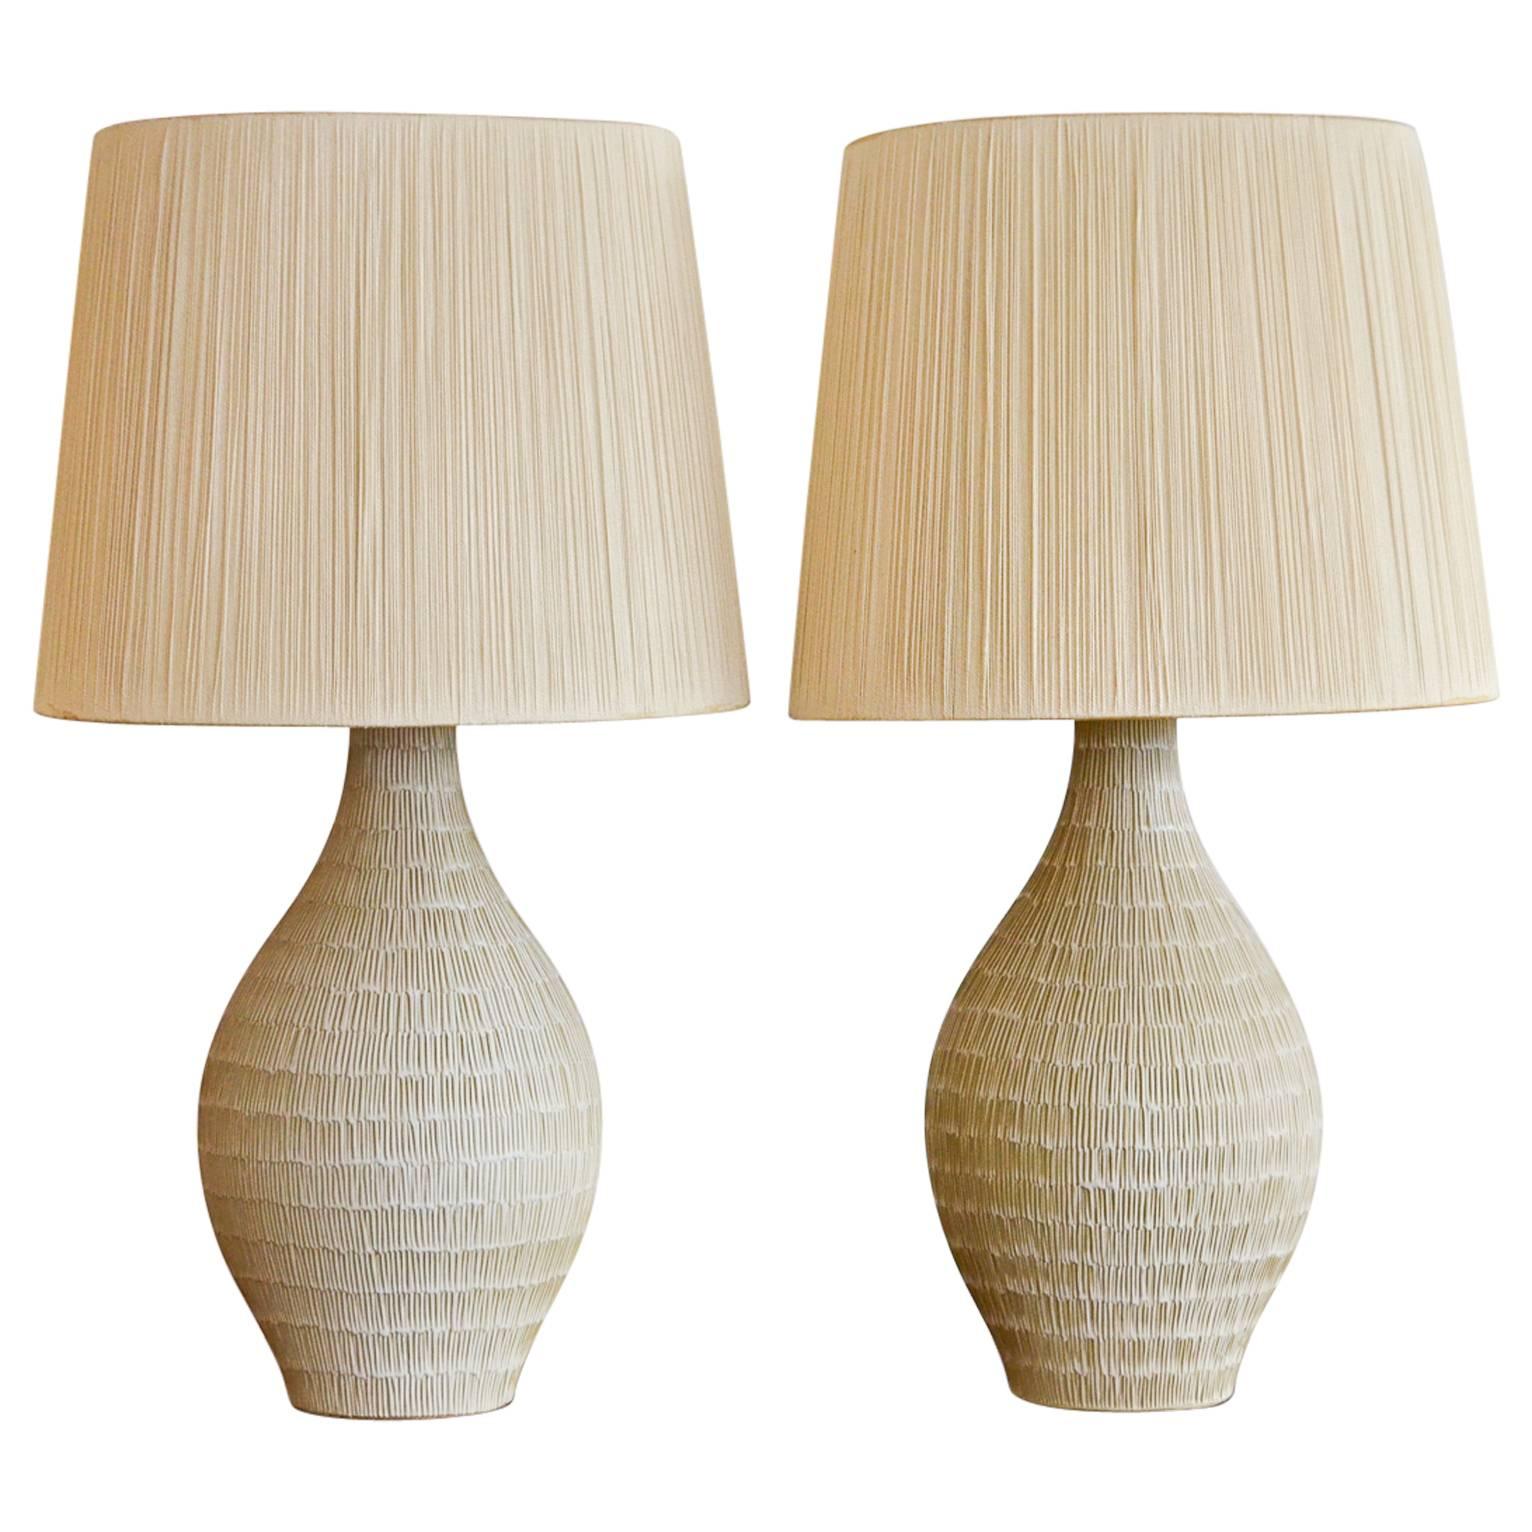 Pair of Incised Cream Ceramic Lamps with Original String Shades